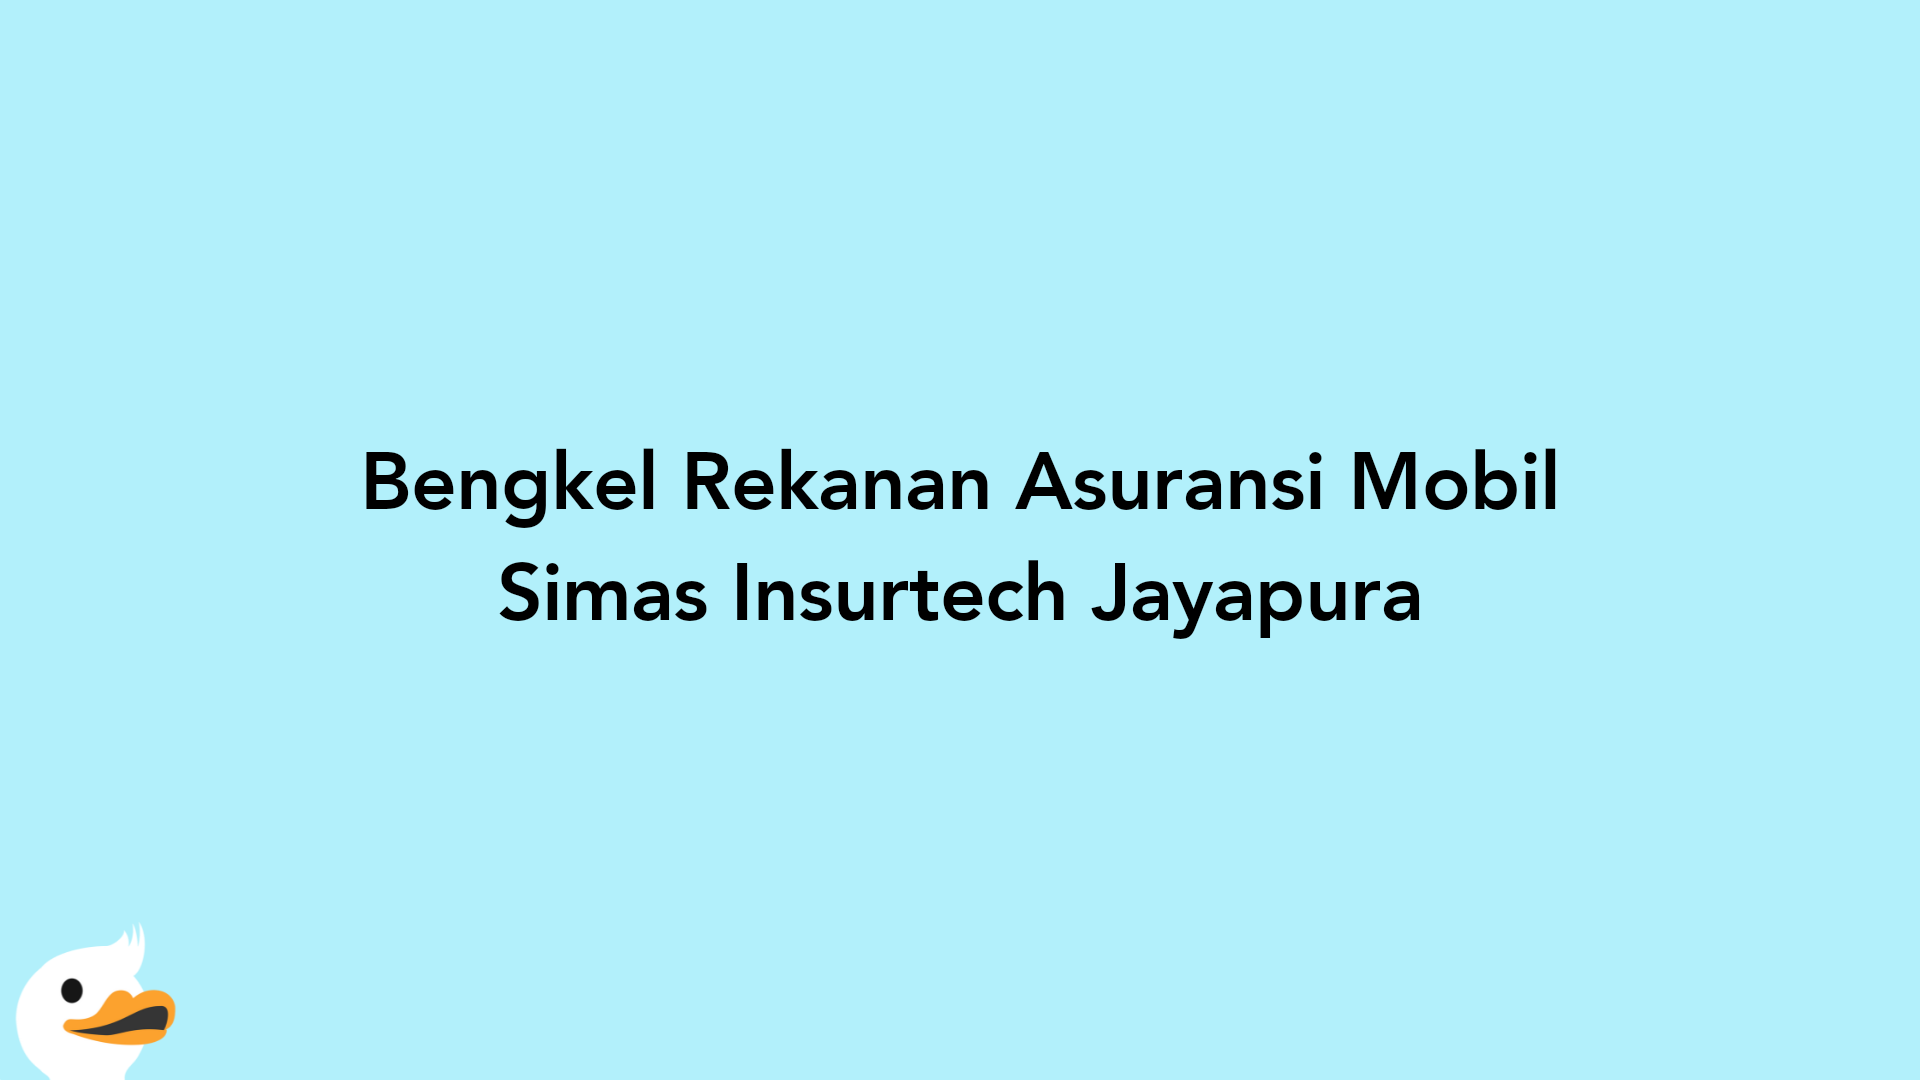 Bengkel Rekanan Asuransi Mobil Simas Insurtech Jayapura